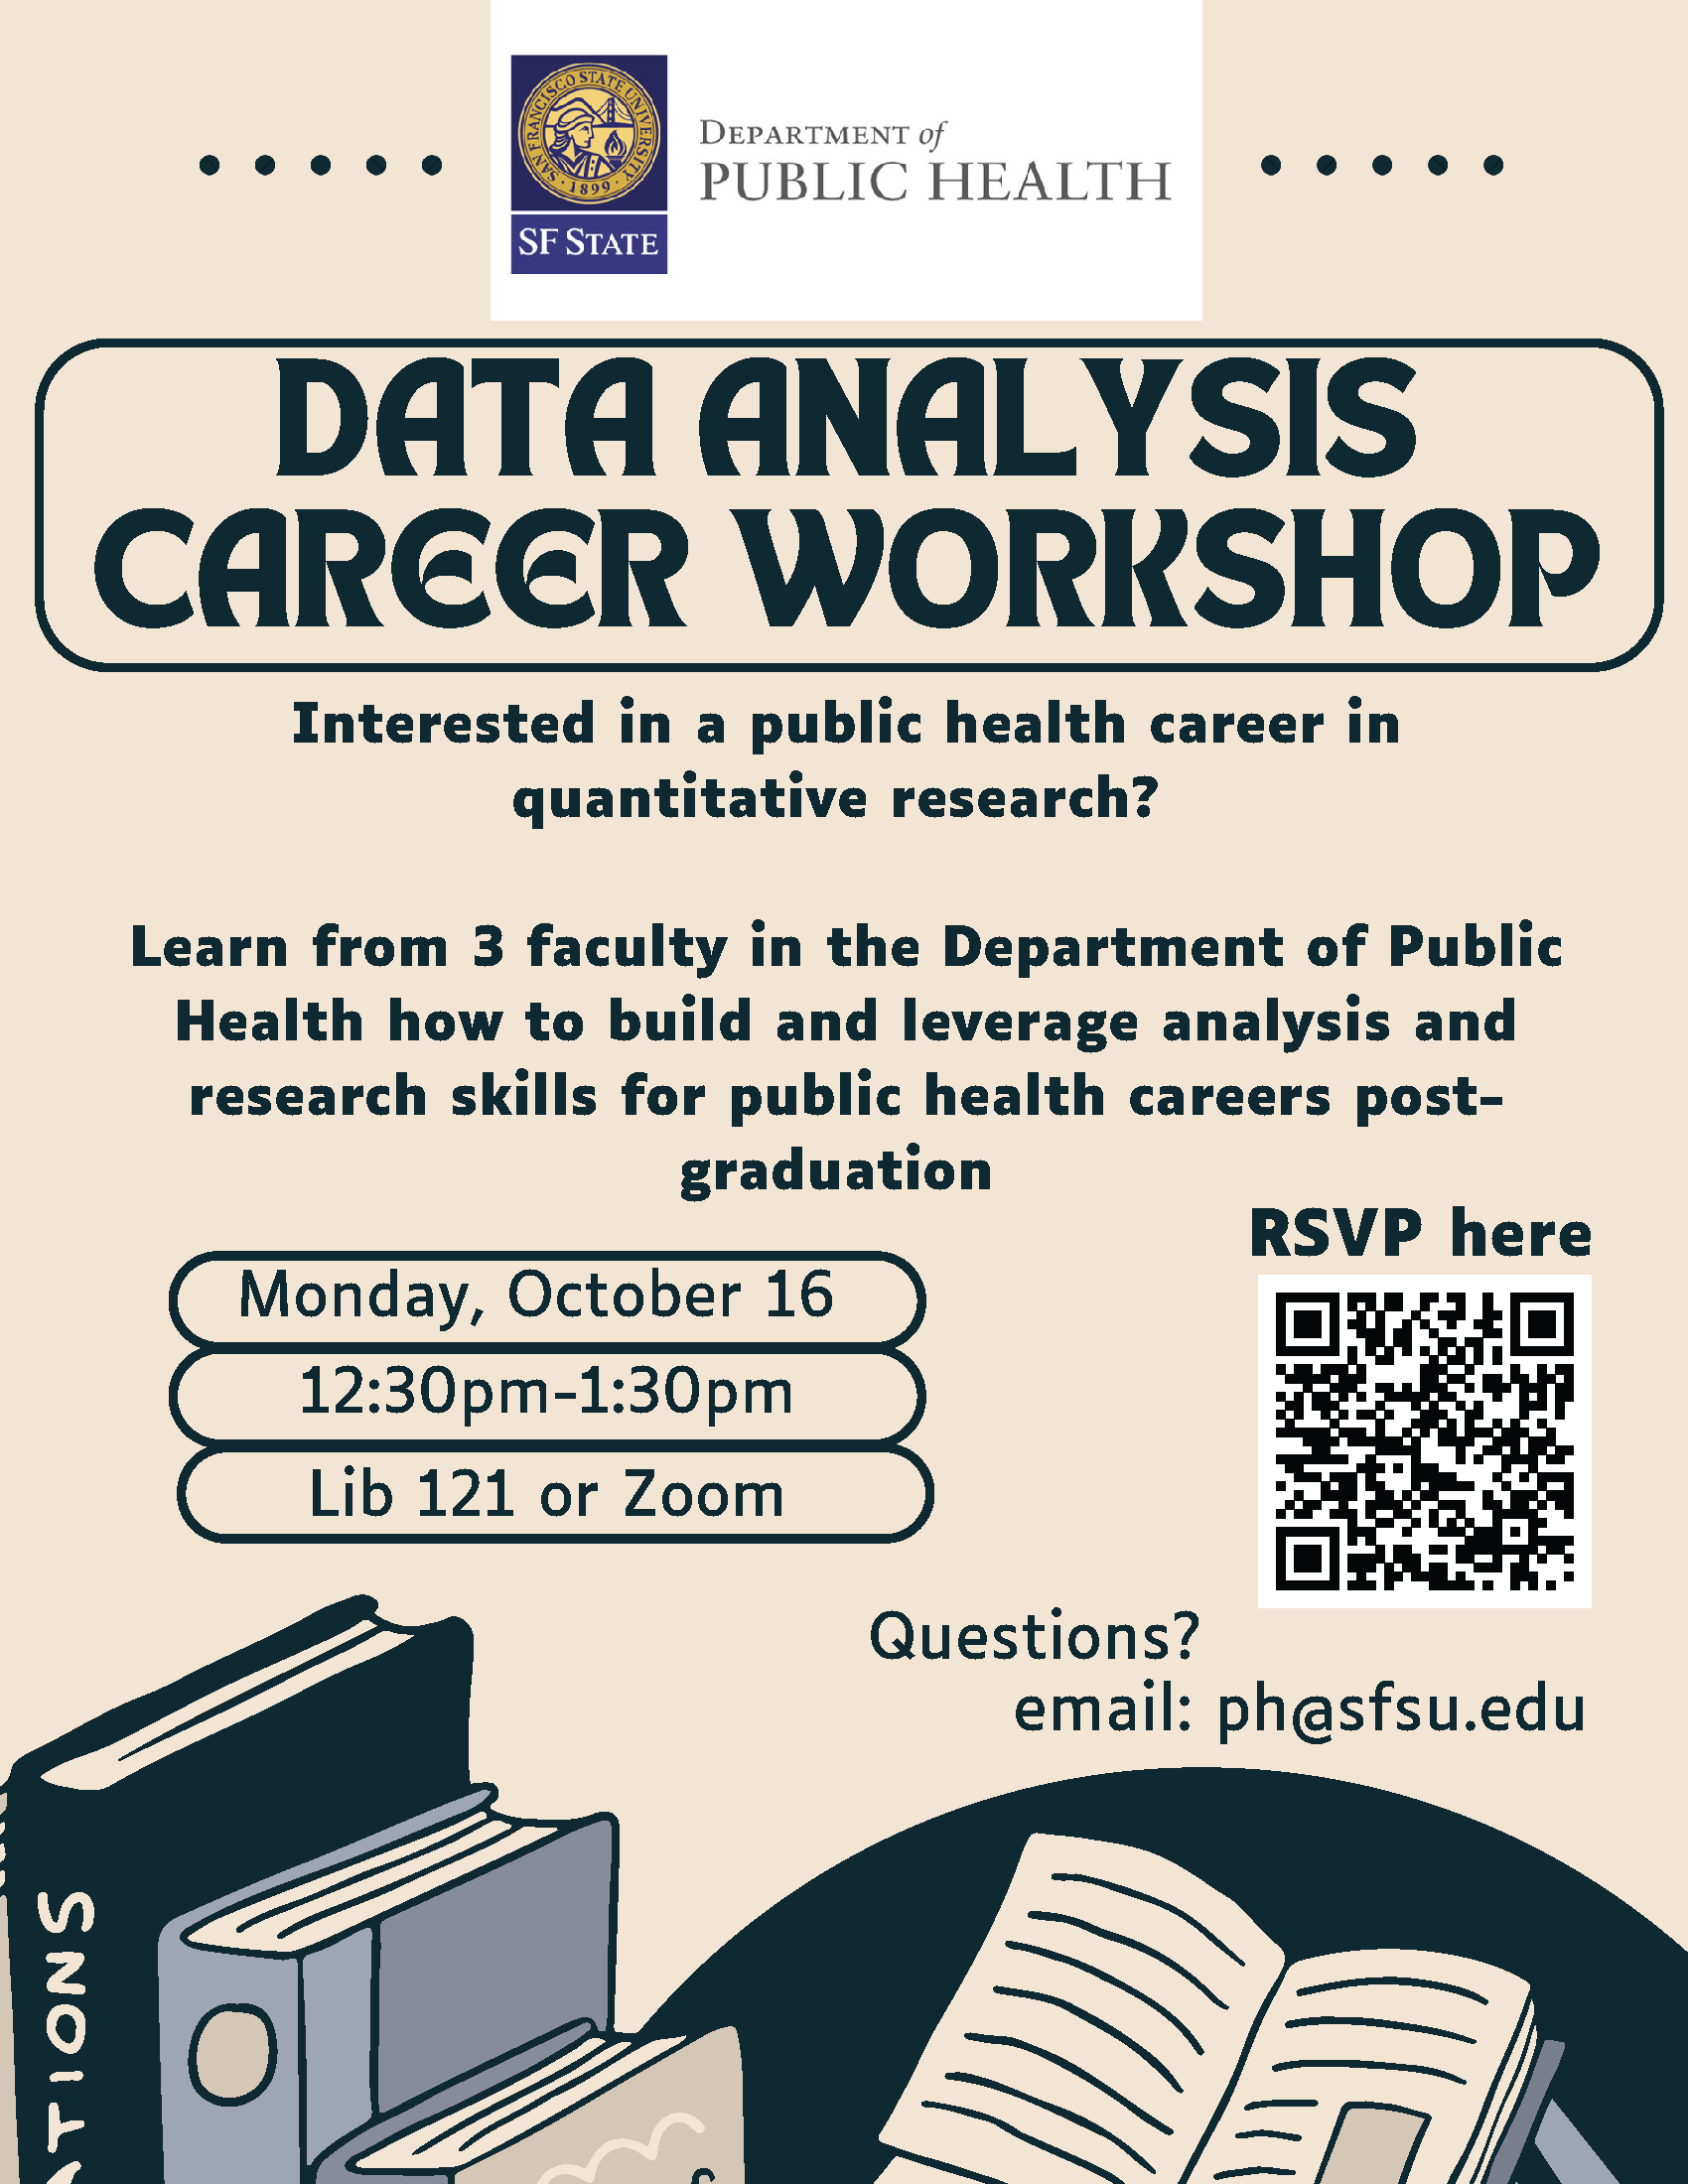 Data analysis workshop flyer 